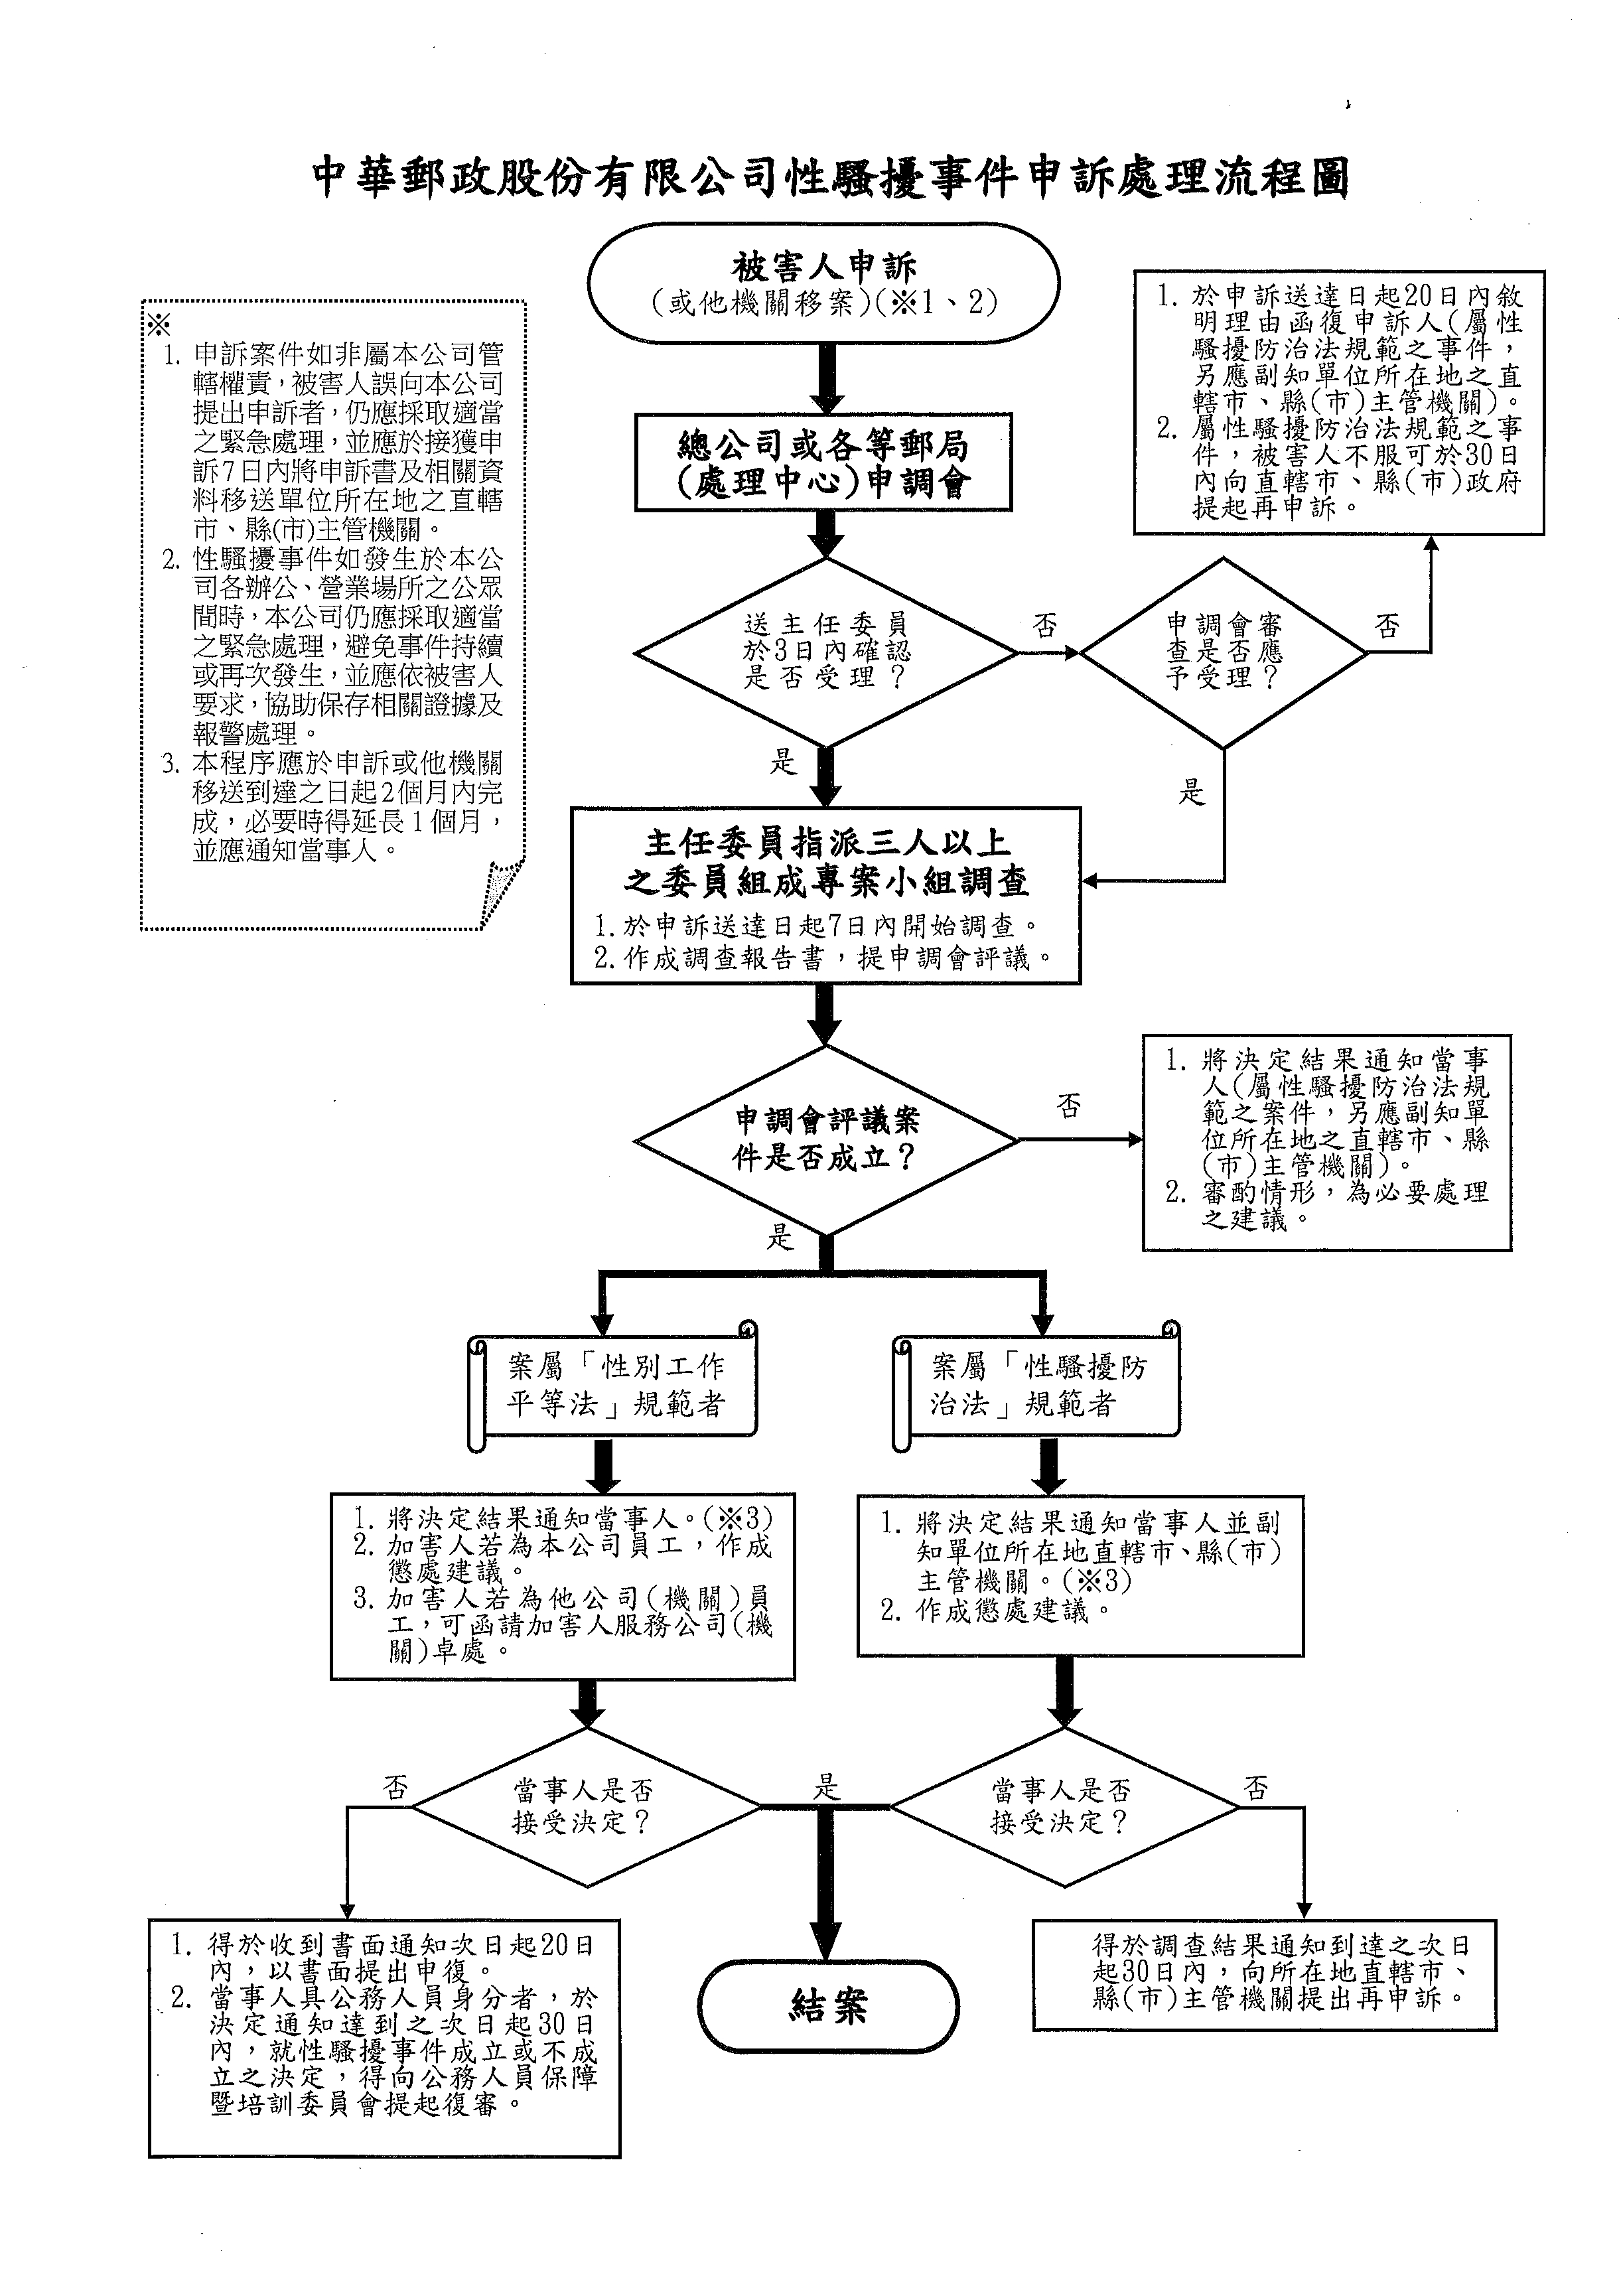 中華郵政股份有限公司性騷擾事件申訴處理流程圖